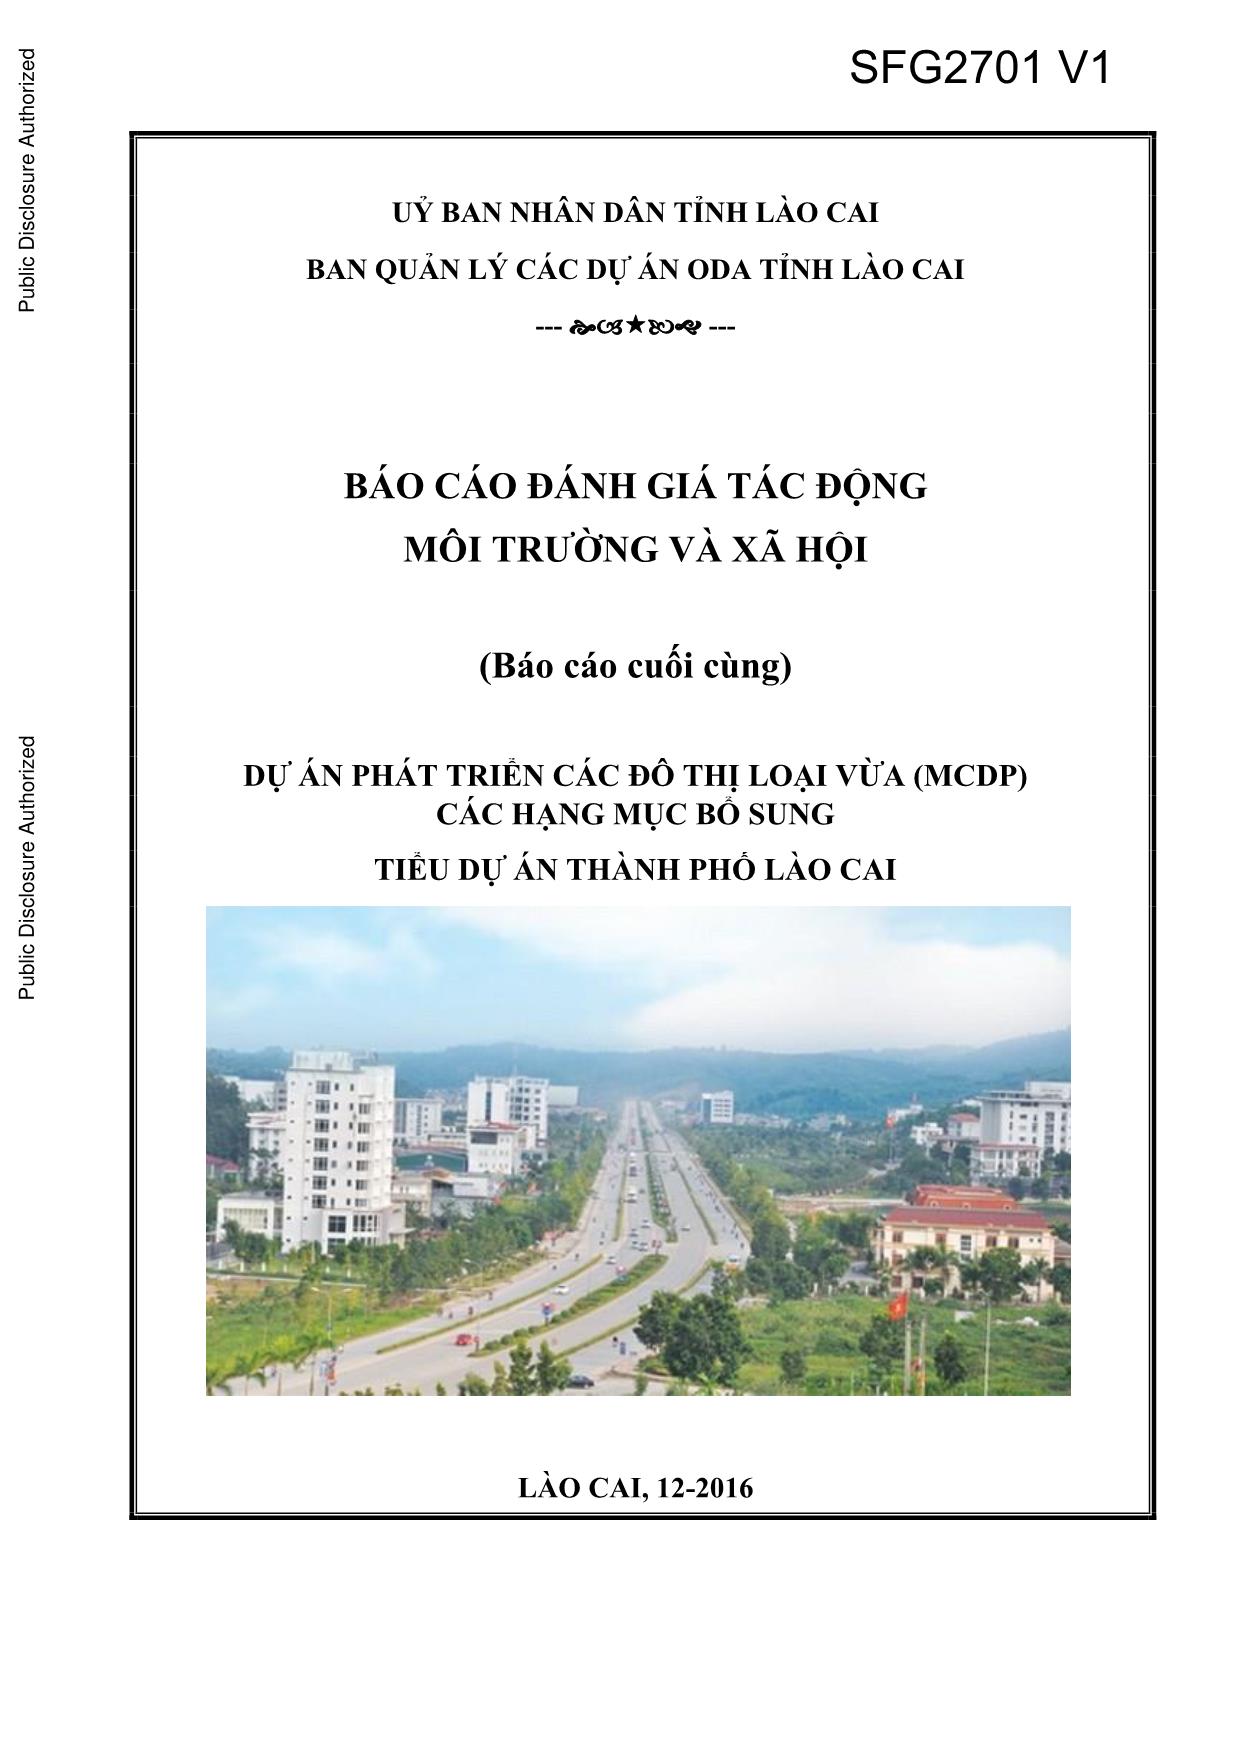 Báo cáo đánh giá tác động môi trường và xã hội: Tiểu dự án thành phố Lào Cai trang 1